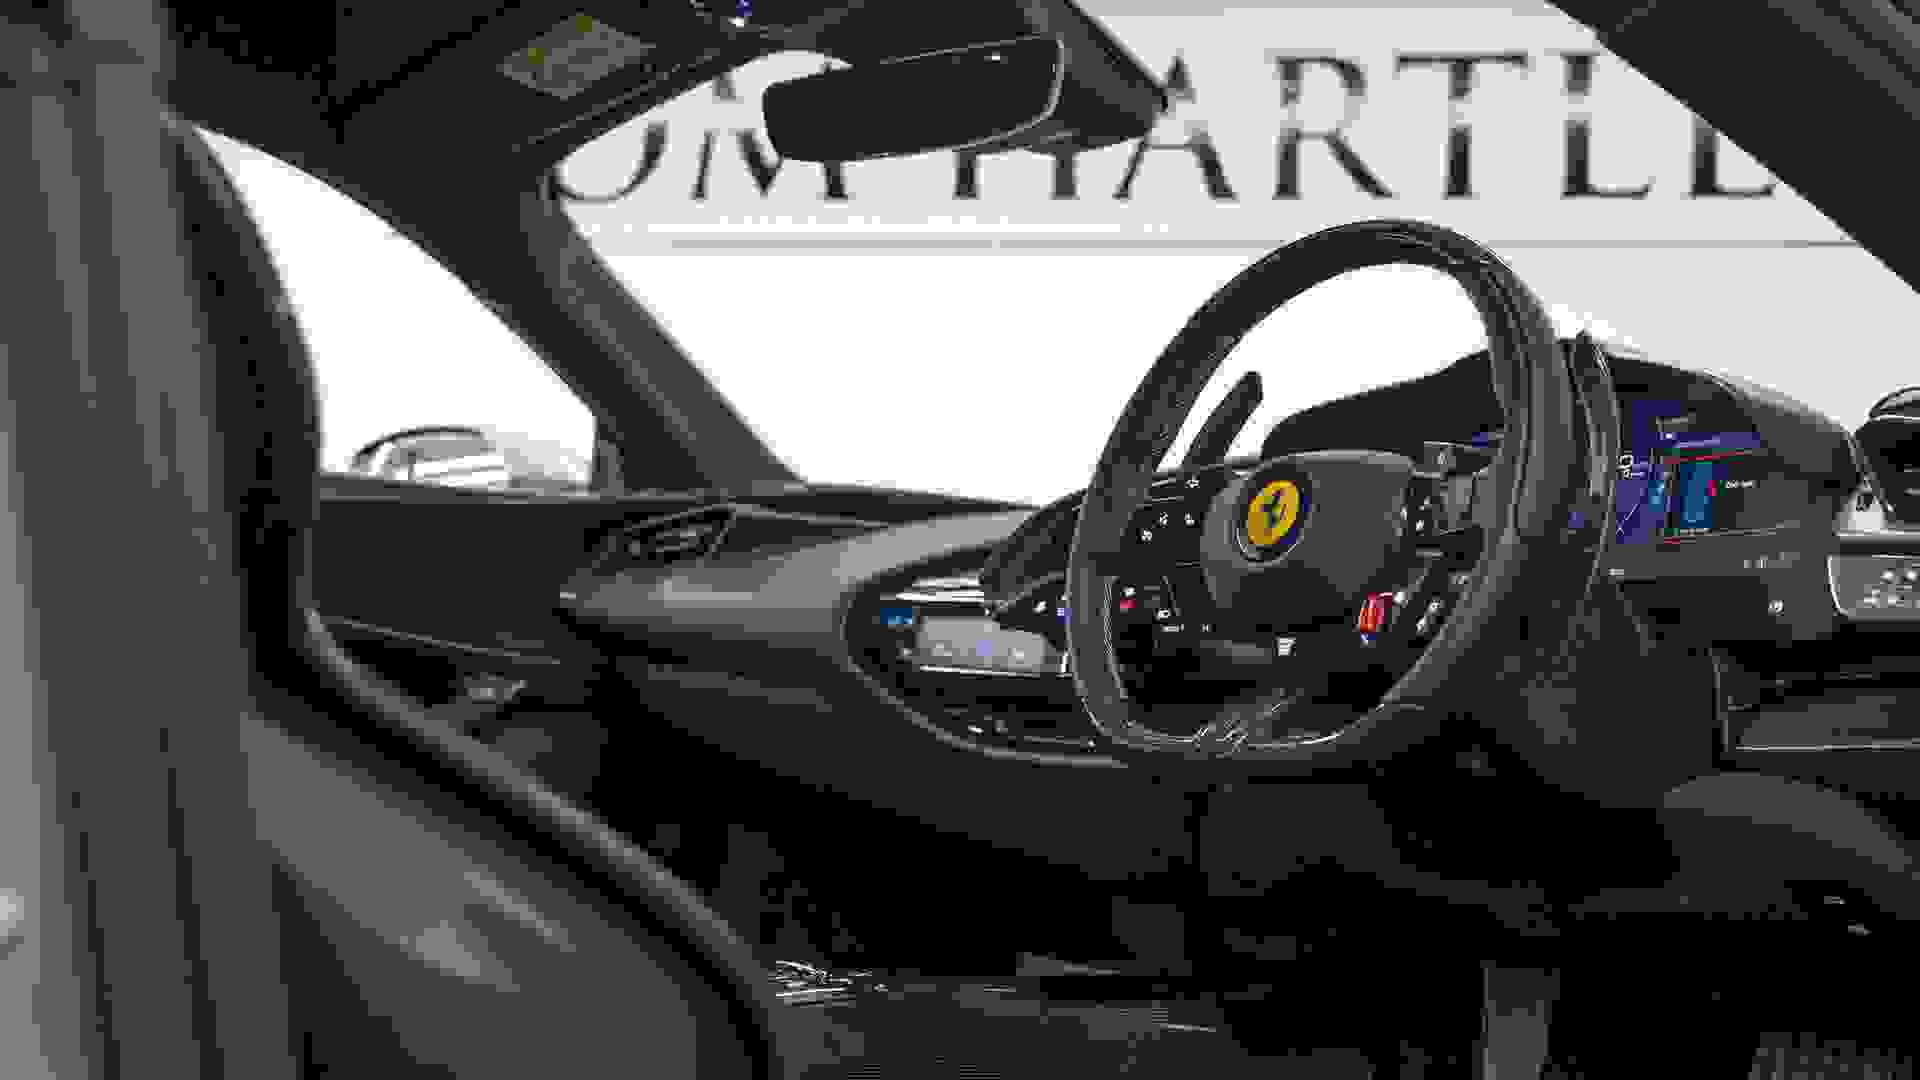 Ferrari SF90 Stradale Photo 71d8e2b8-9a4b-4a8a-88c1-5151e035586b.jpg